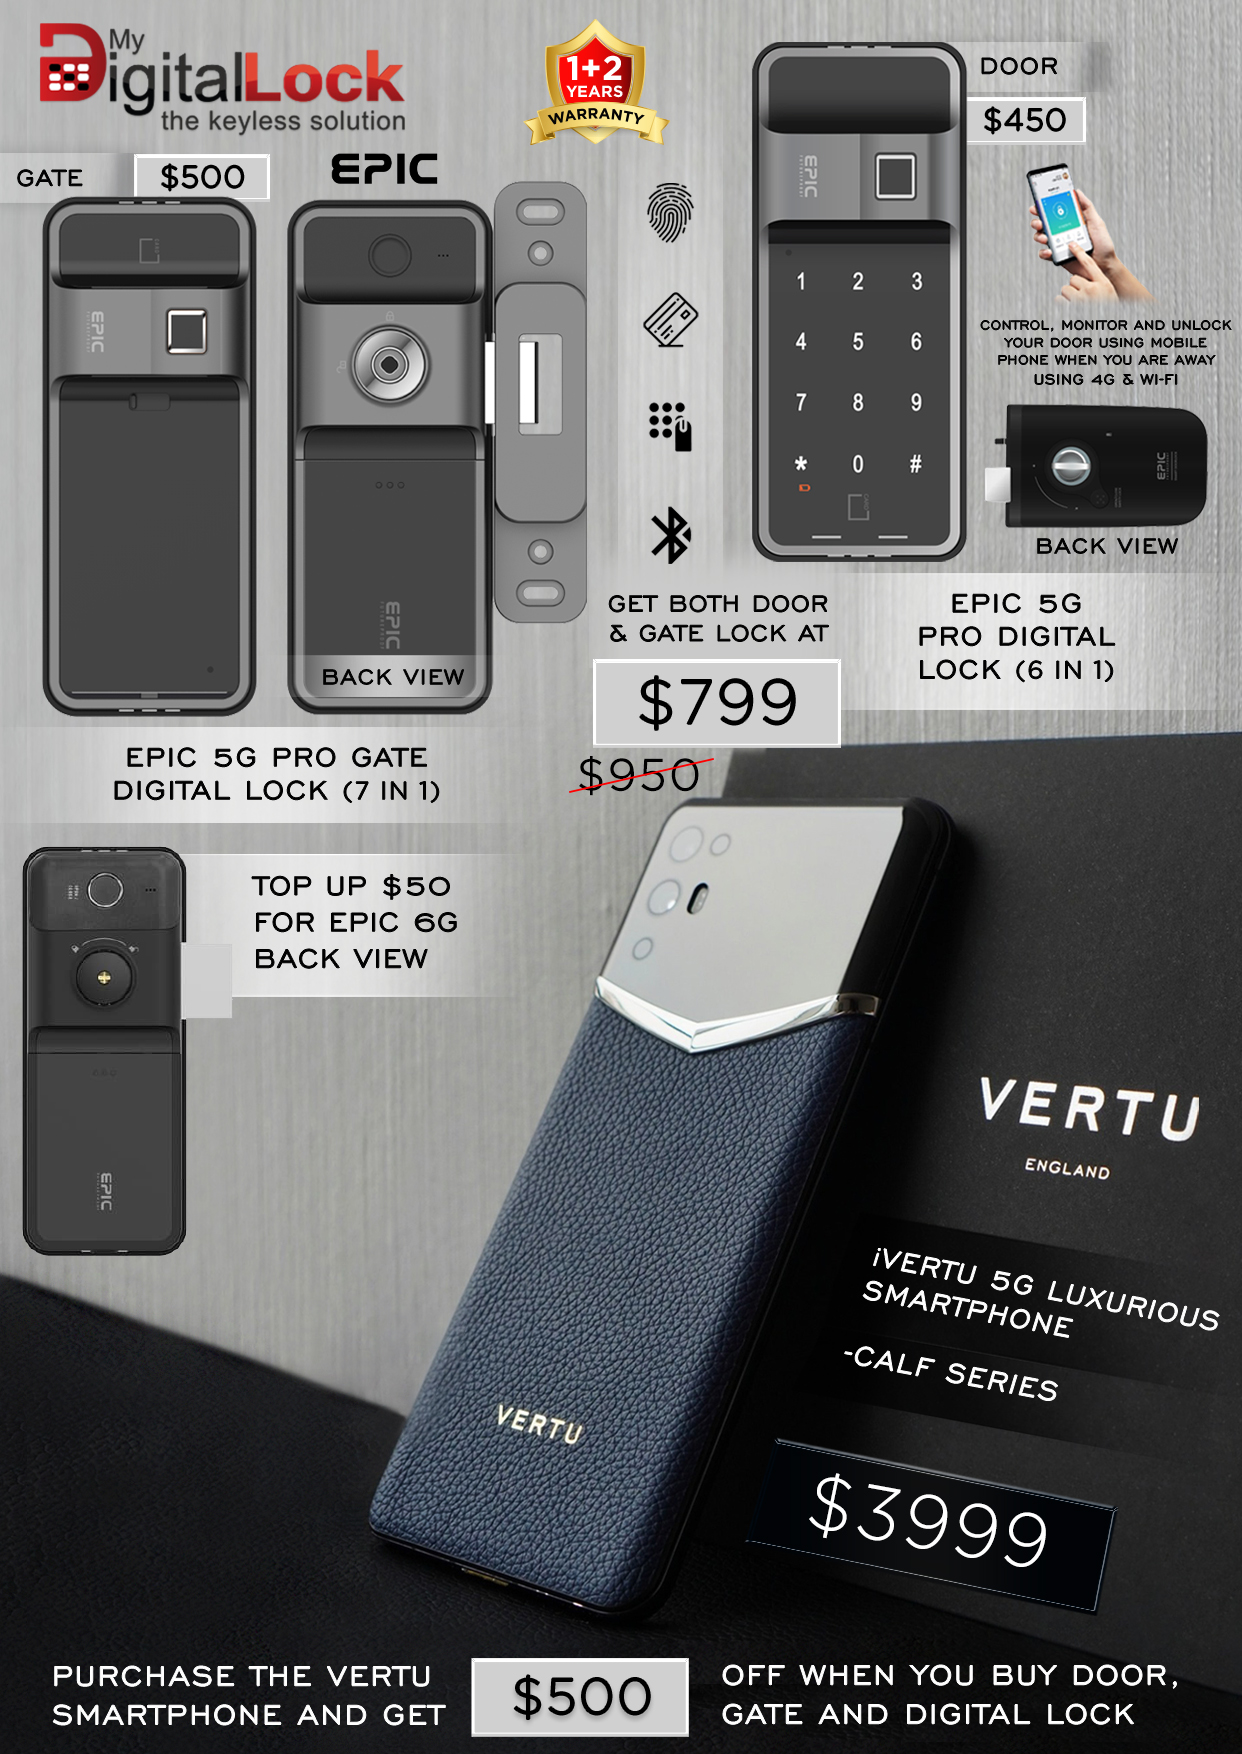 Best-Selling-Rim-Digital-Lock-and-iVertu-Phone-Calf-Series